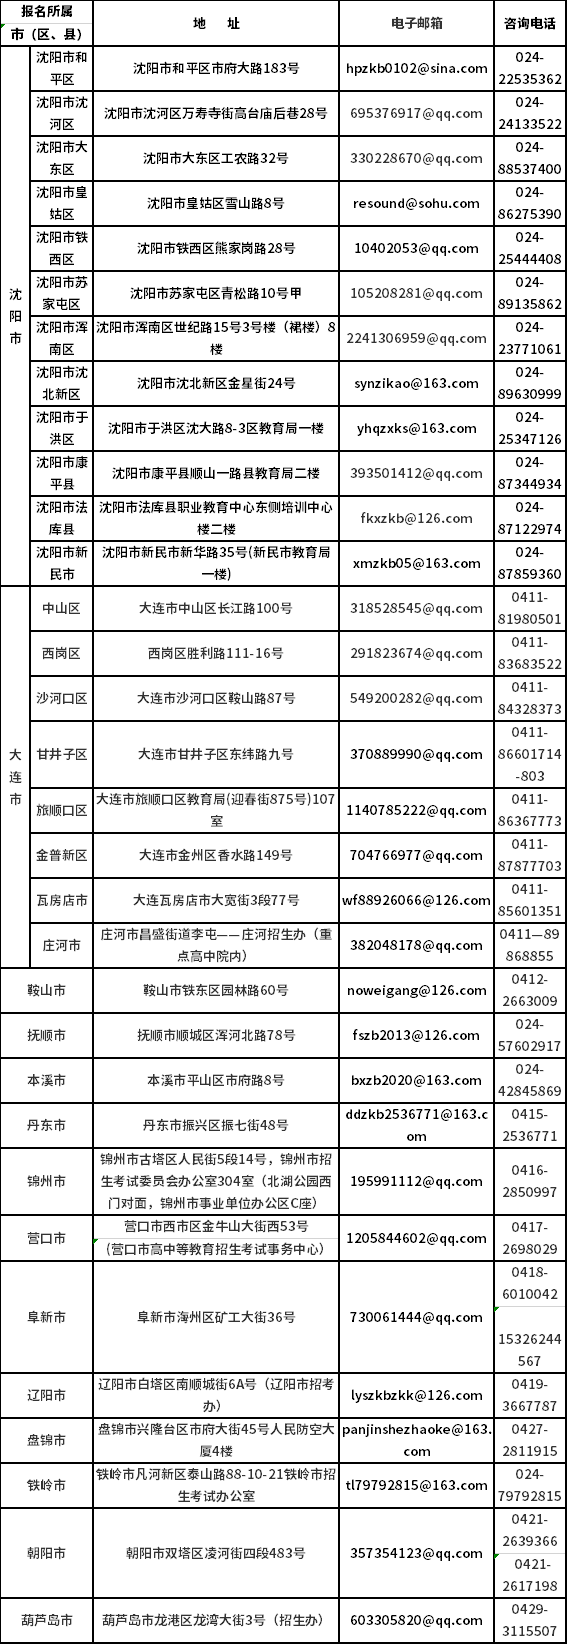 辽宁省自学考试各市（区）人工审核信息统计表